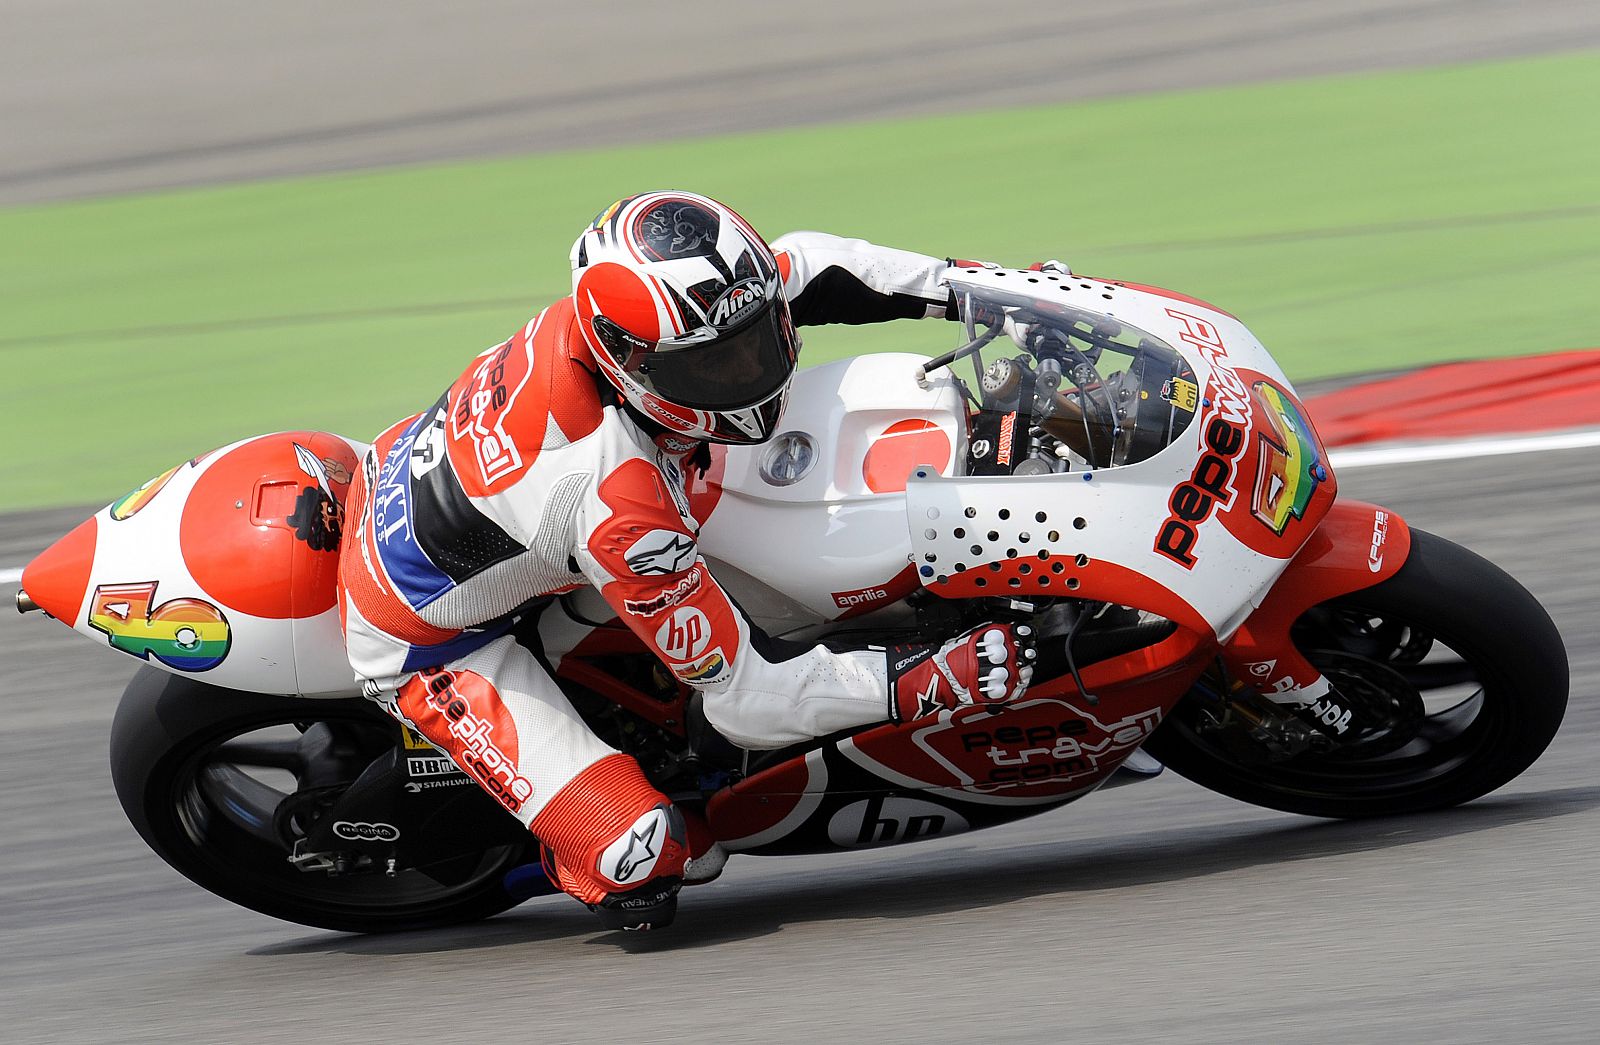 Baberá, pilotando su moto de 250cc, correrá a partir del año próximo en MotoGP